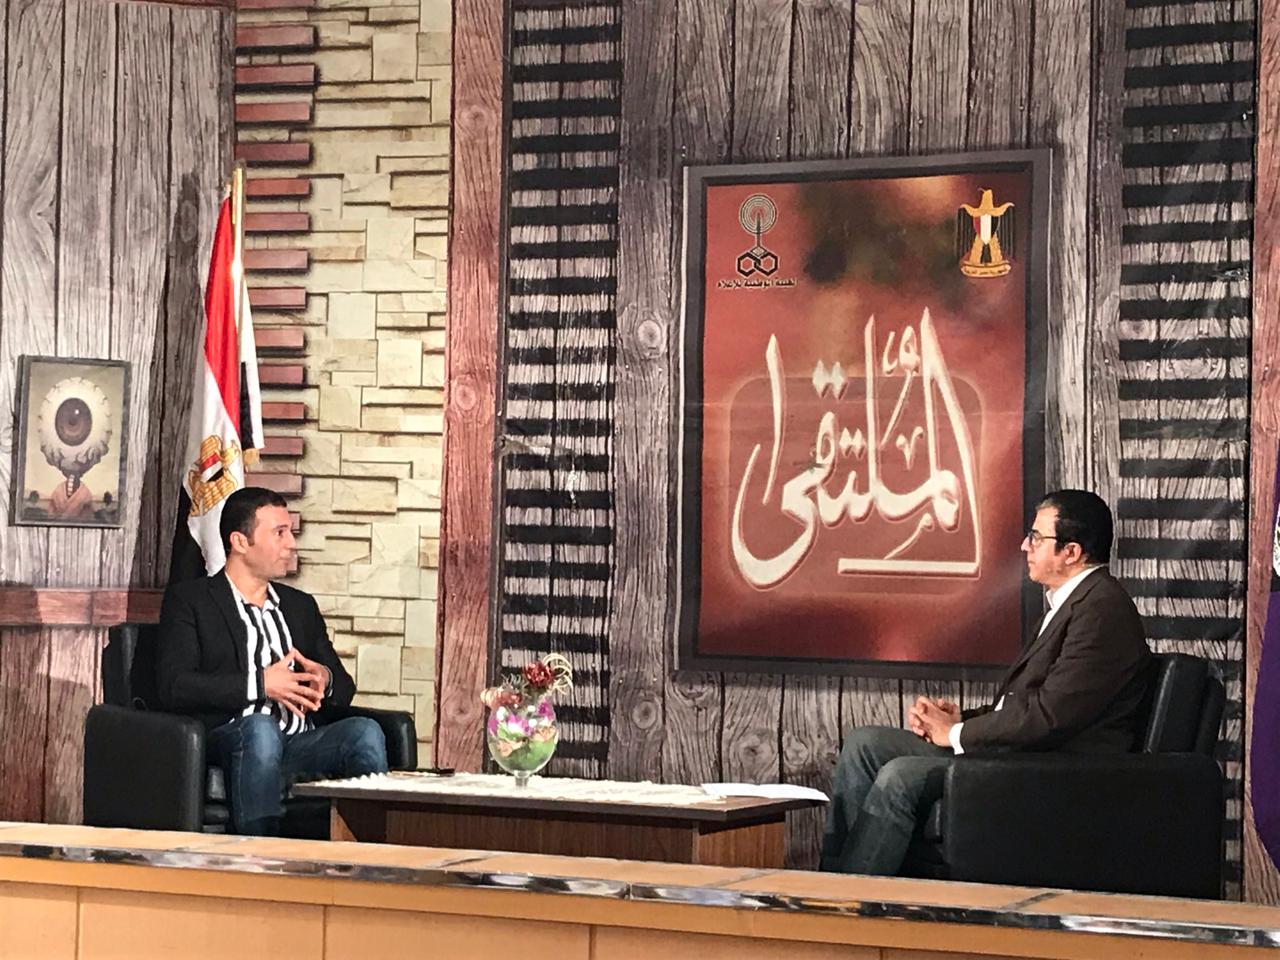 الاعلامي خالد سعد مقدم برنامج الملتقي في لقائه مع جمال عبد الناصر